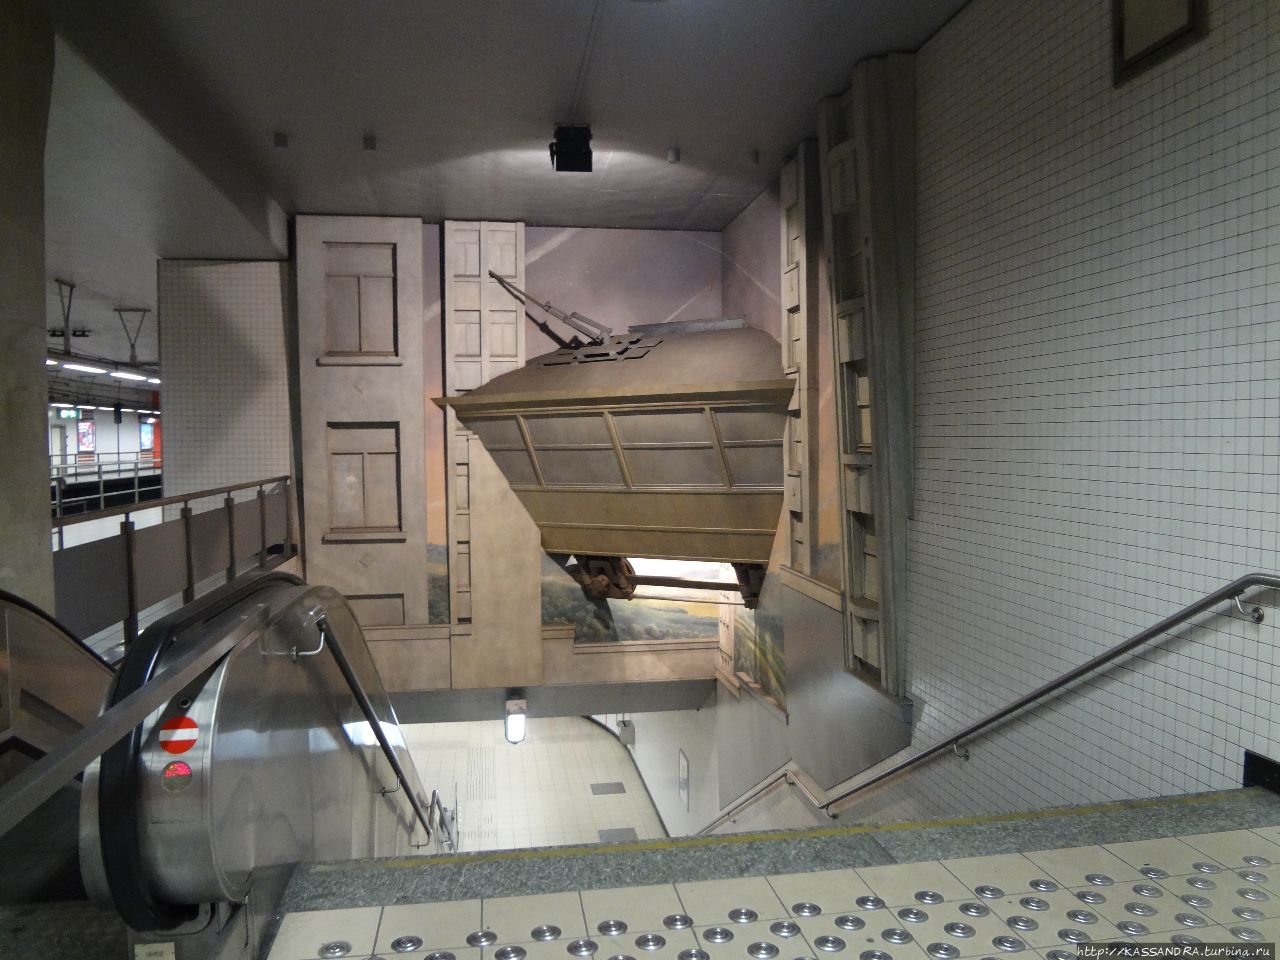 Посмотреть станции метро Брюссель, Бельгия